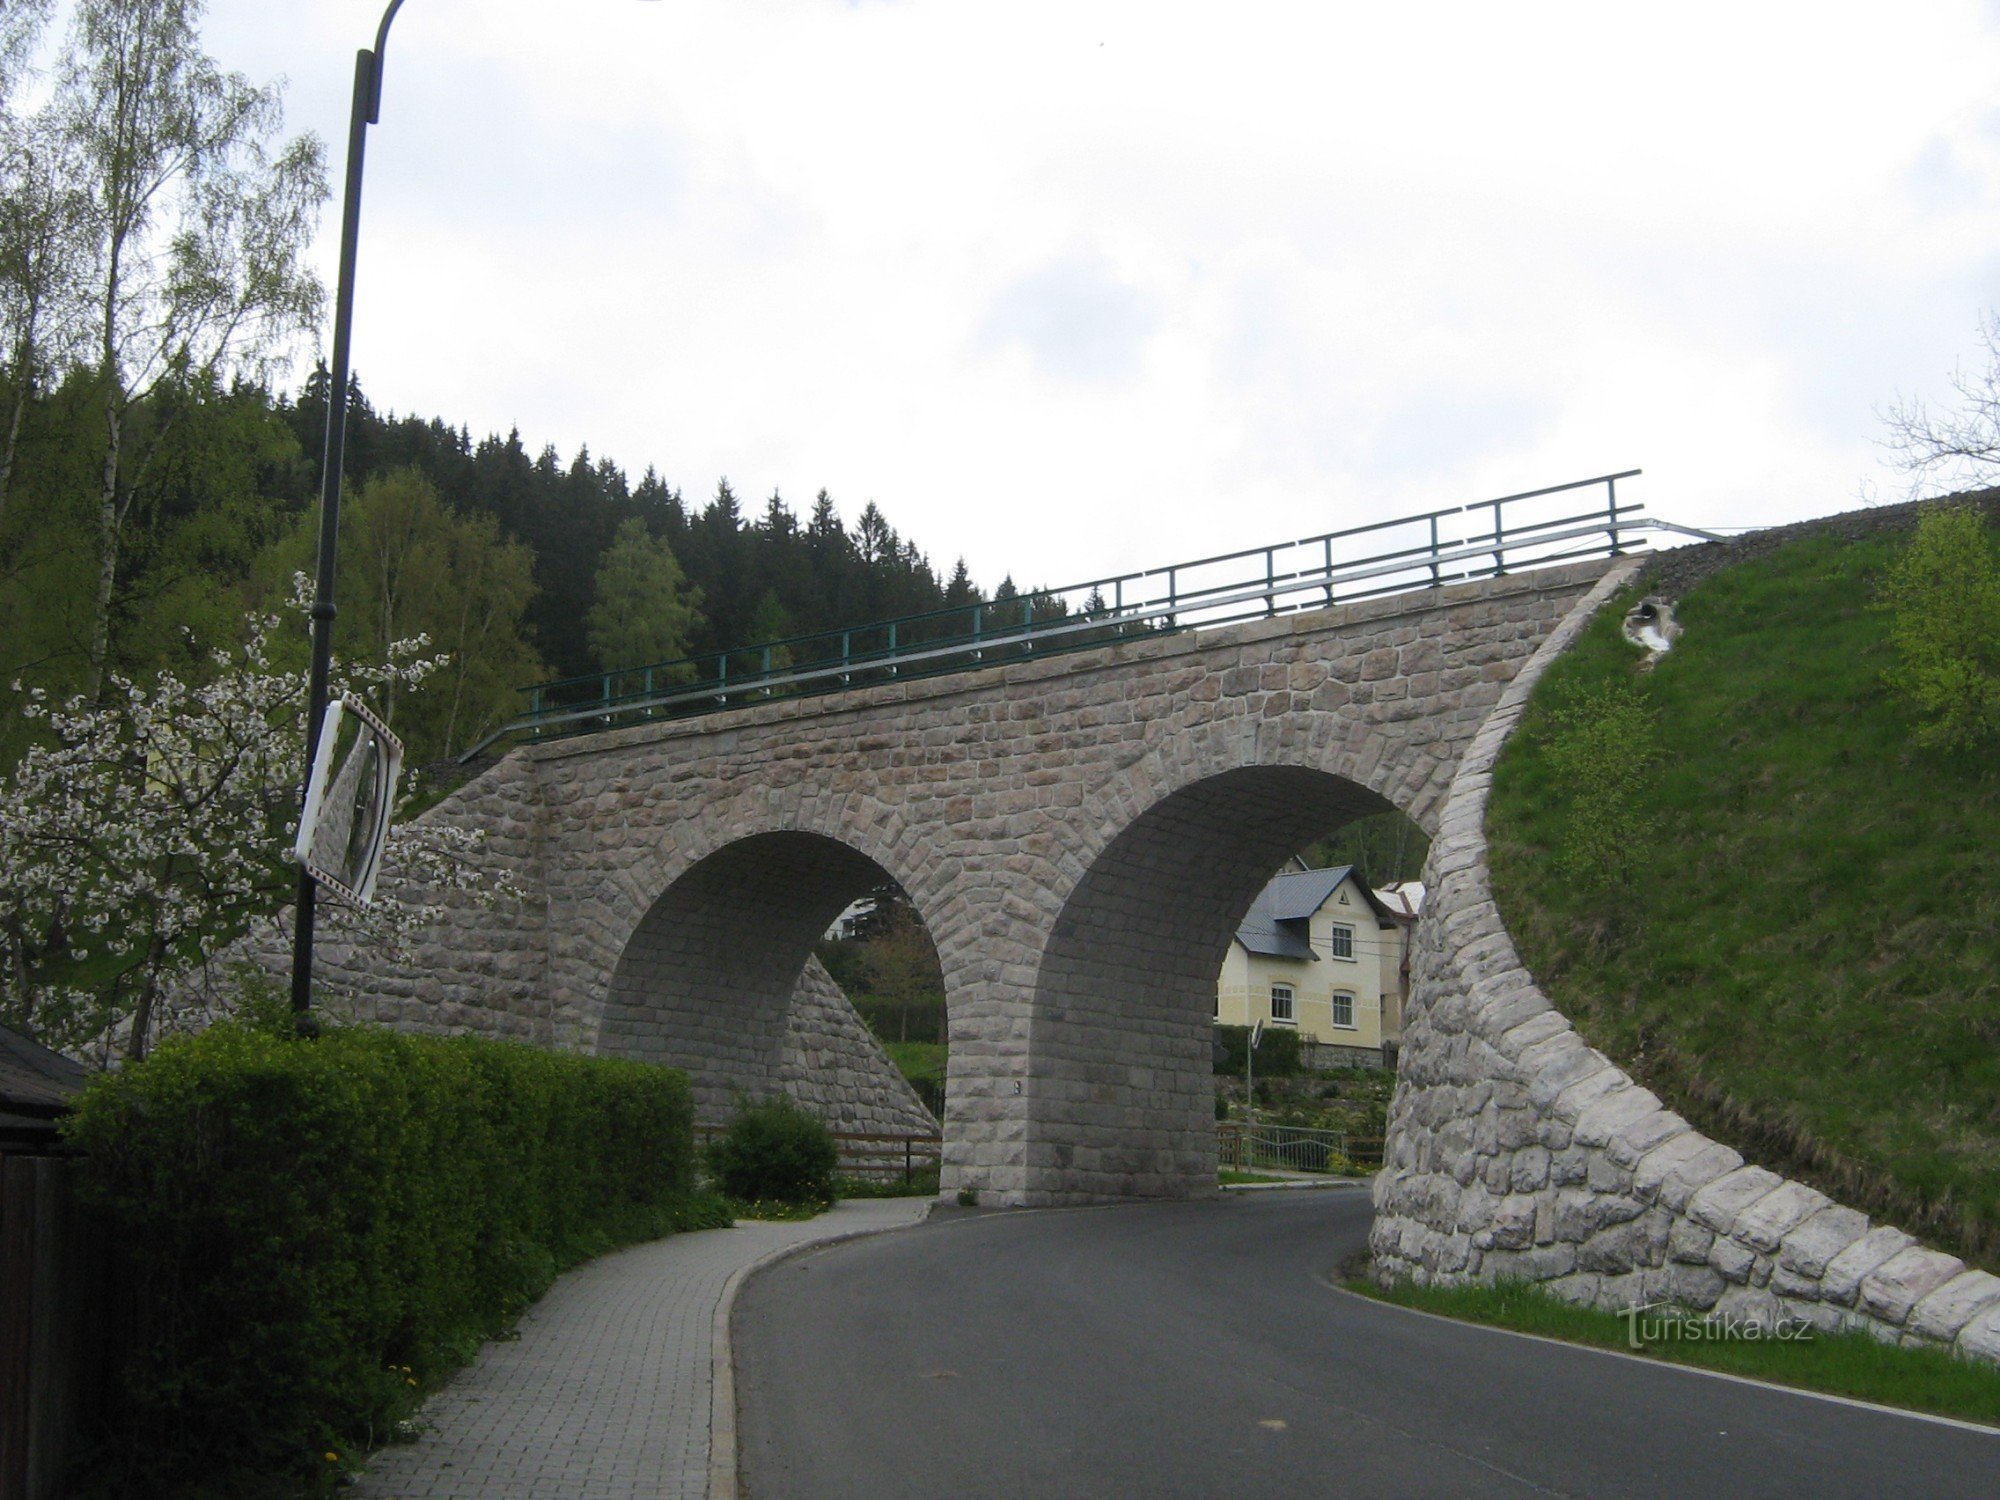 Viadukt in Hamre